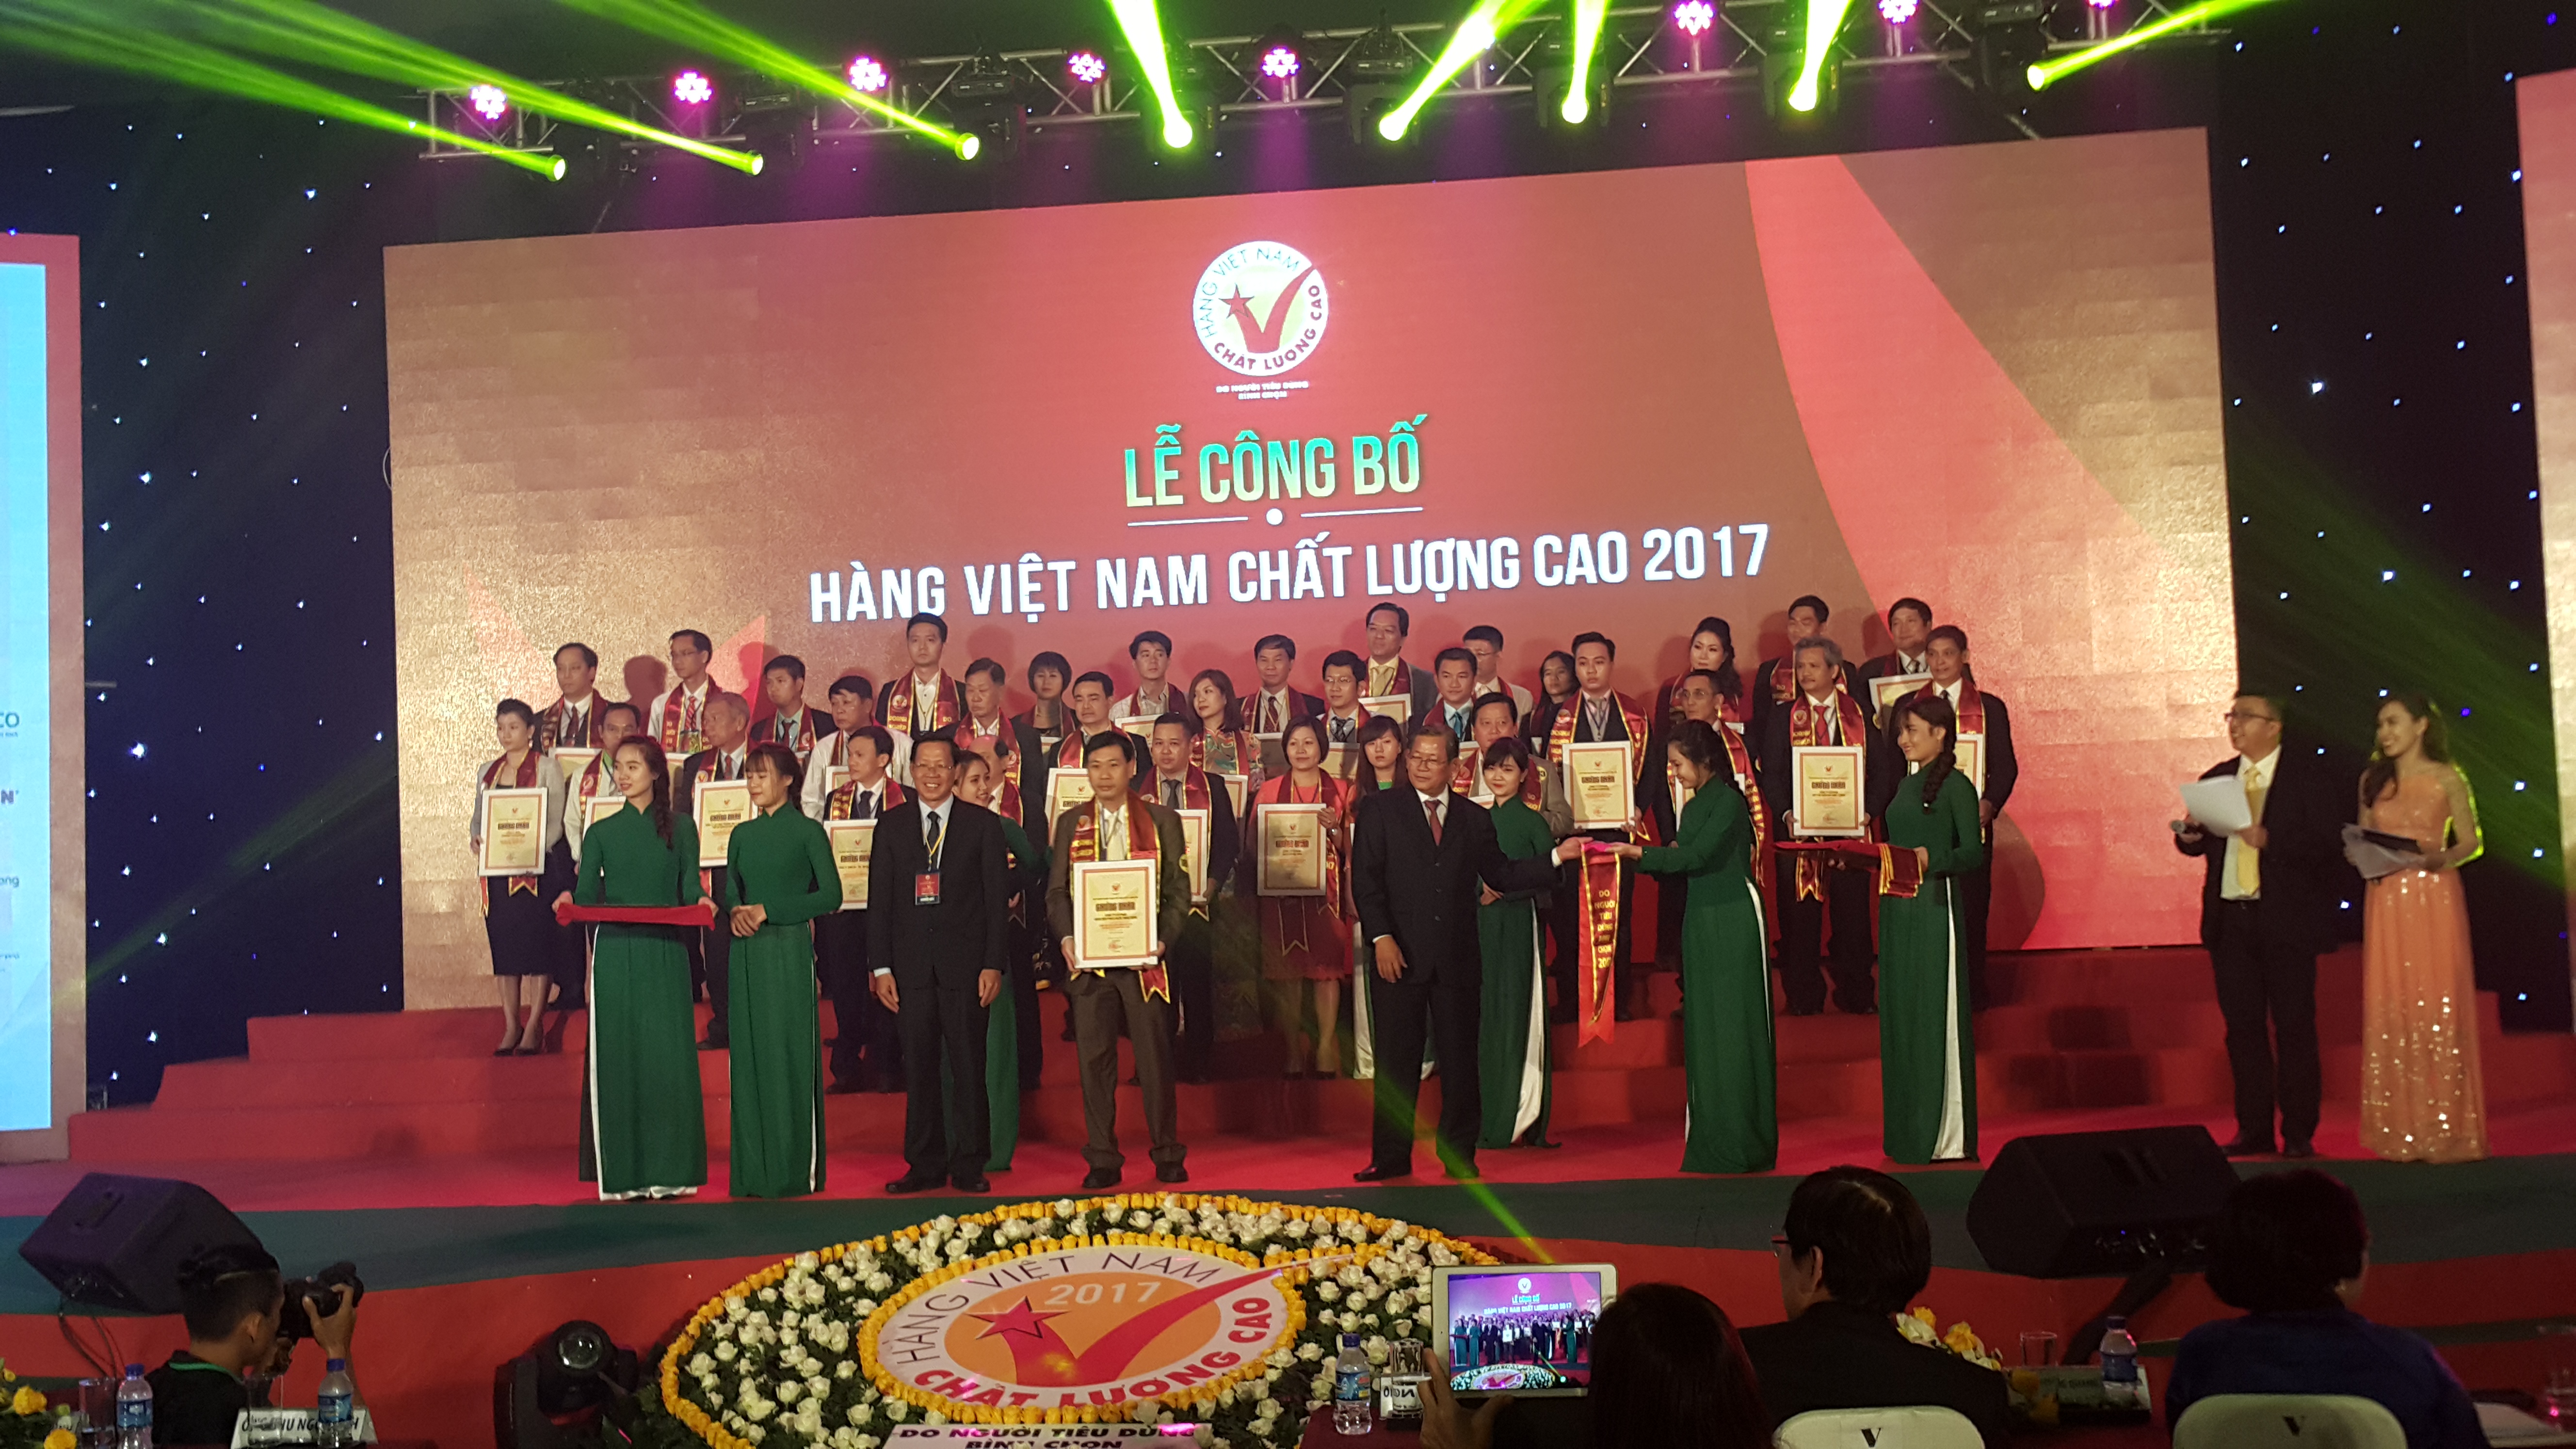 Rạng Đông được bình chọn Hàng Việt Nam chất lượng cao 21 năm liên tiếp